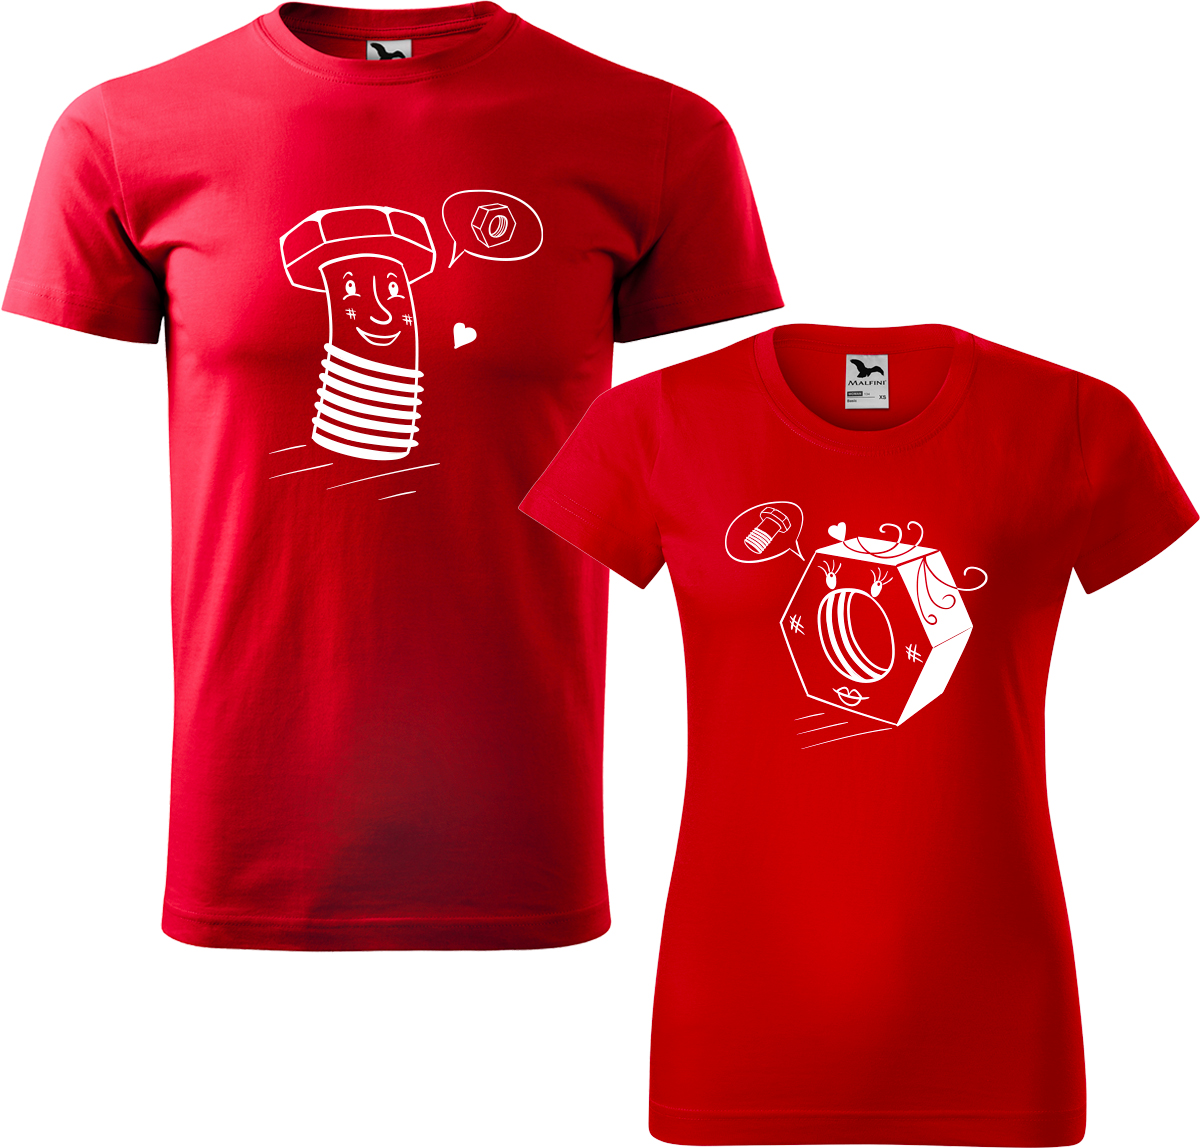 Trička pro páry - Šroubek a matička Barva: Červená (07), Velikost dámské tričko: S, Velikost pánské tričko: S